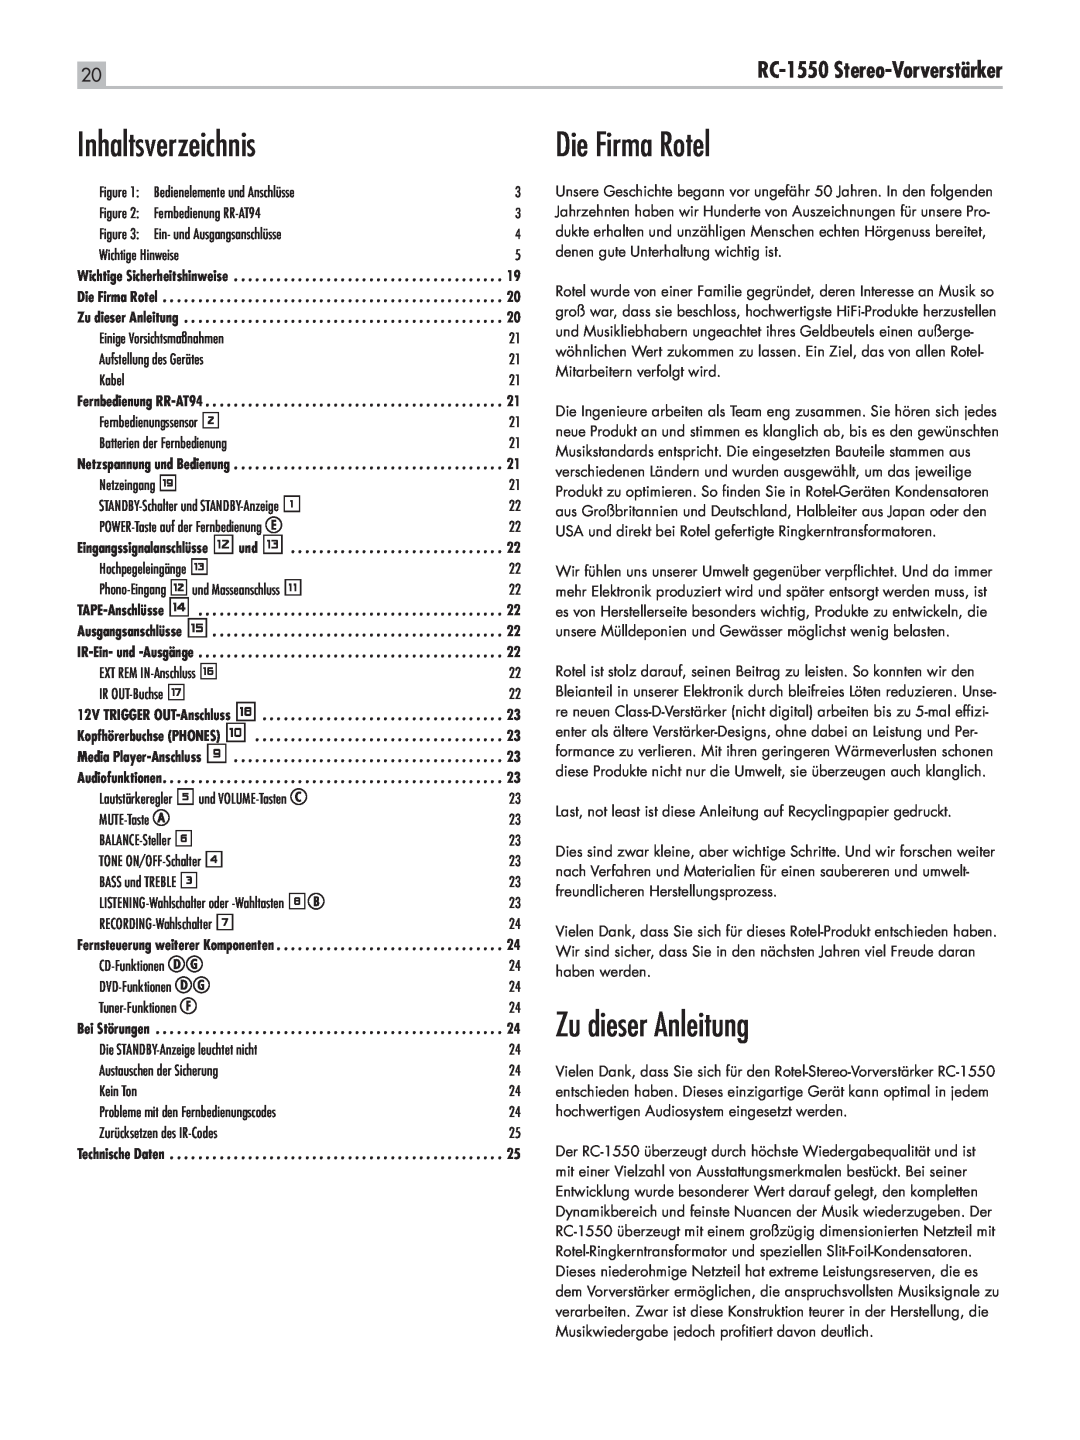 Rotel owner manual Inhaltsverzeichnis, Die Firma Rotel, Zu dieser Anleitung, RC-1550 Stereo-Vorverstärker 